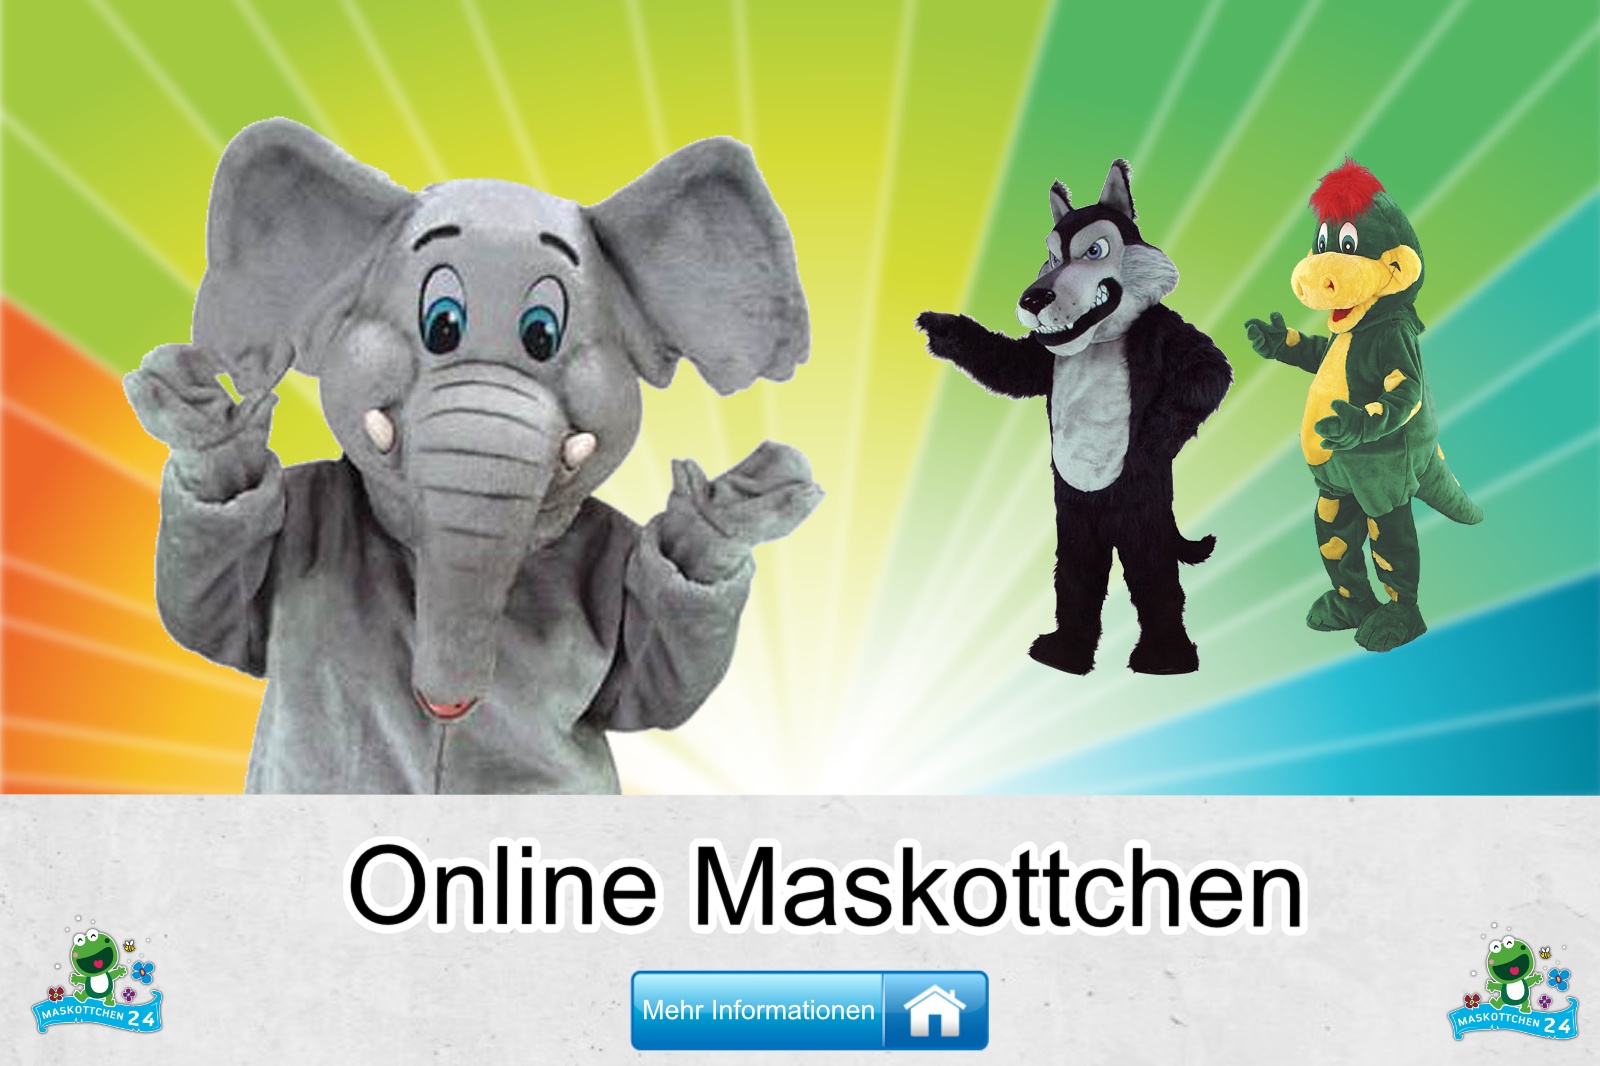 Online-Kostuem-Maskottchen-Guenstig-Kaufen-Produktion